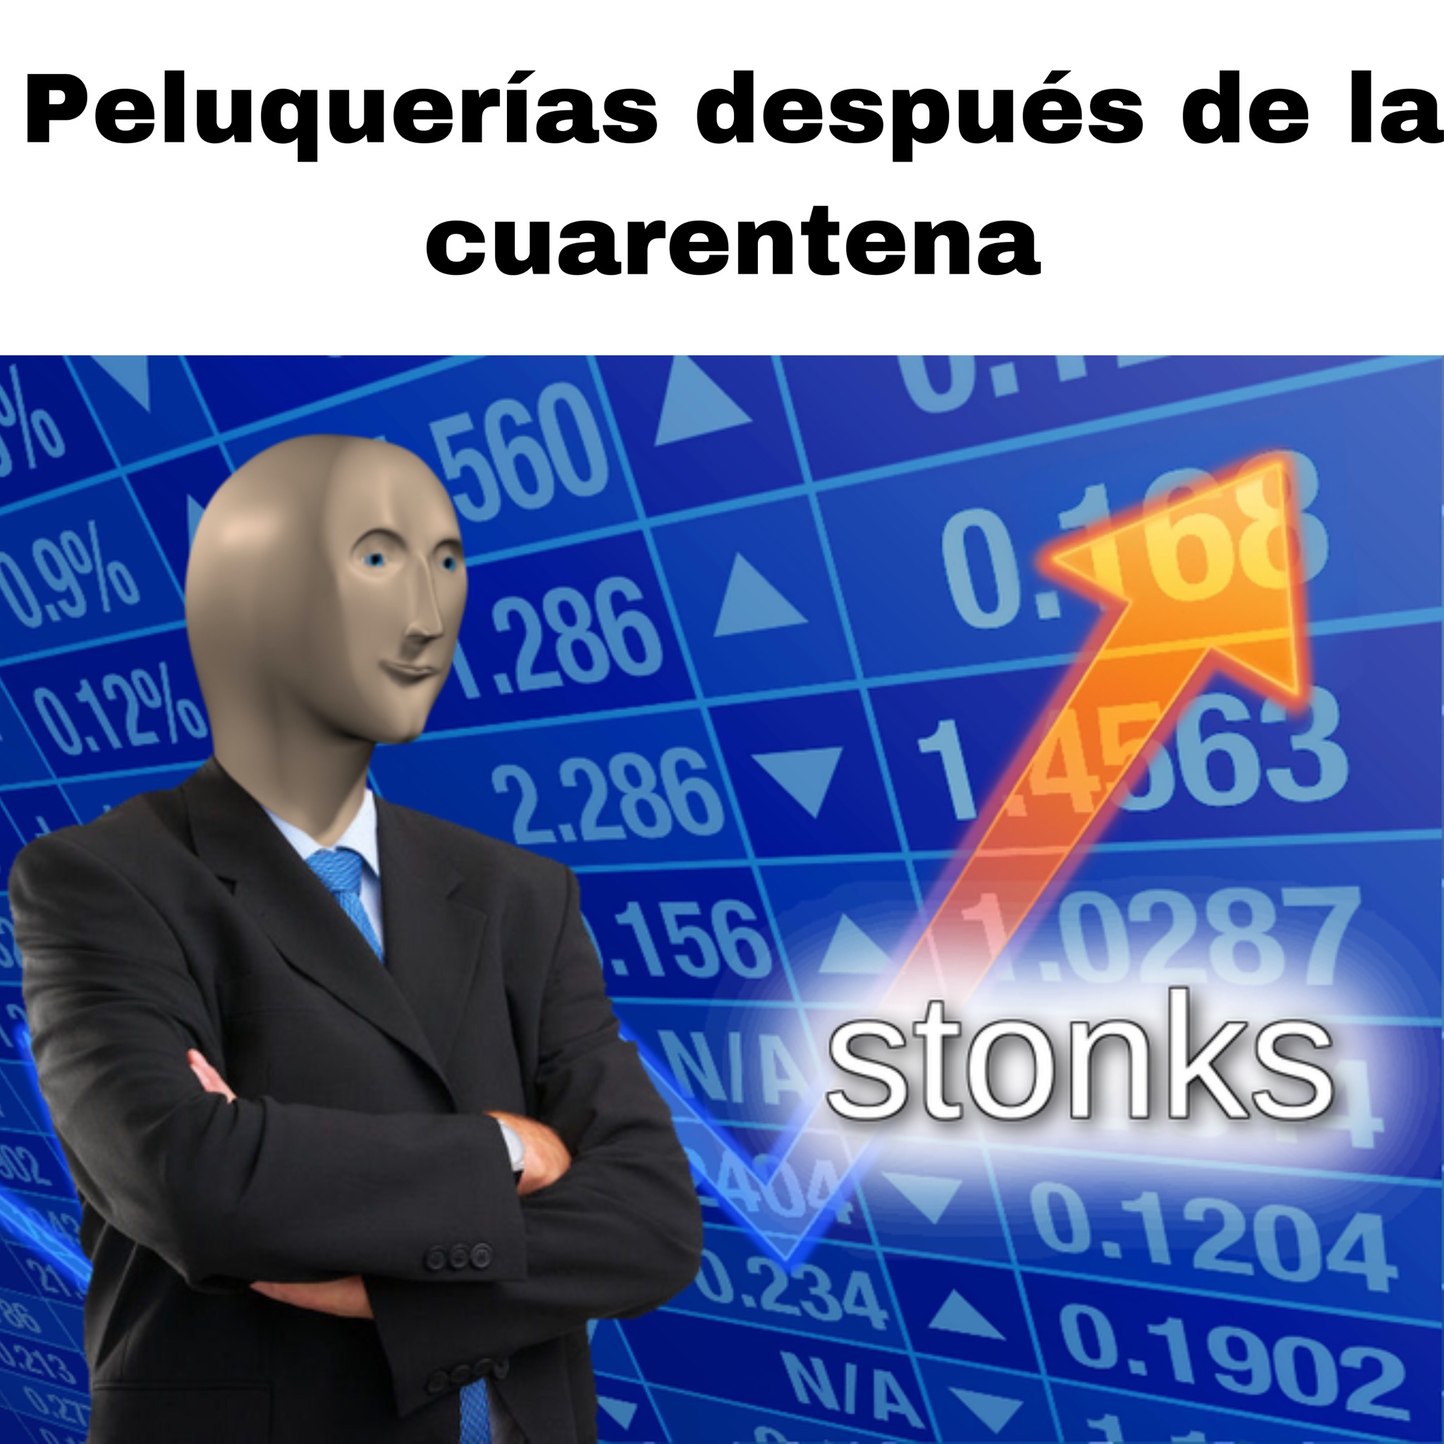 stonks - meme